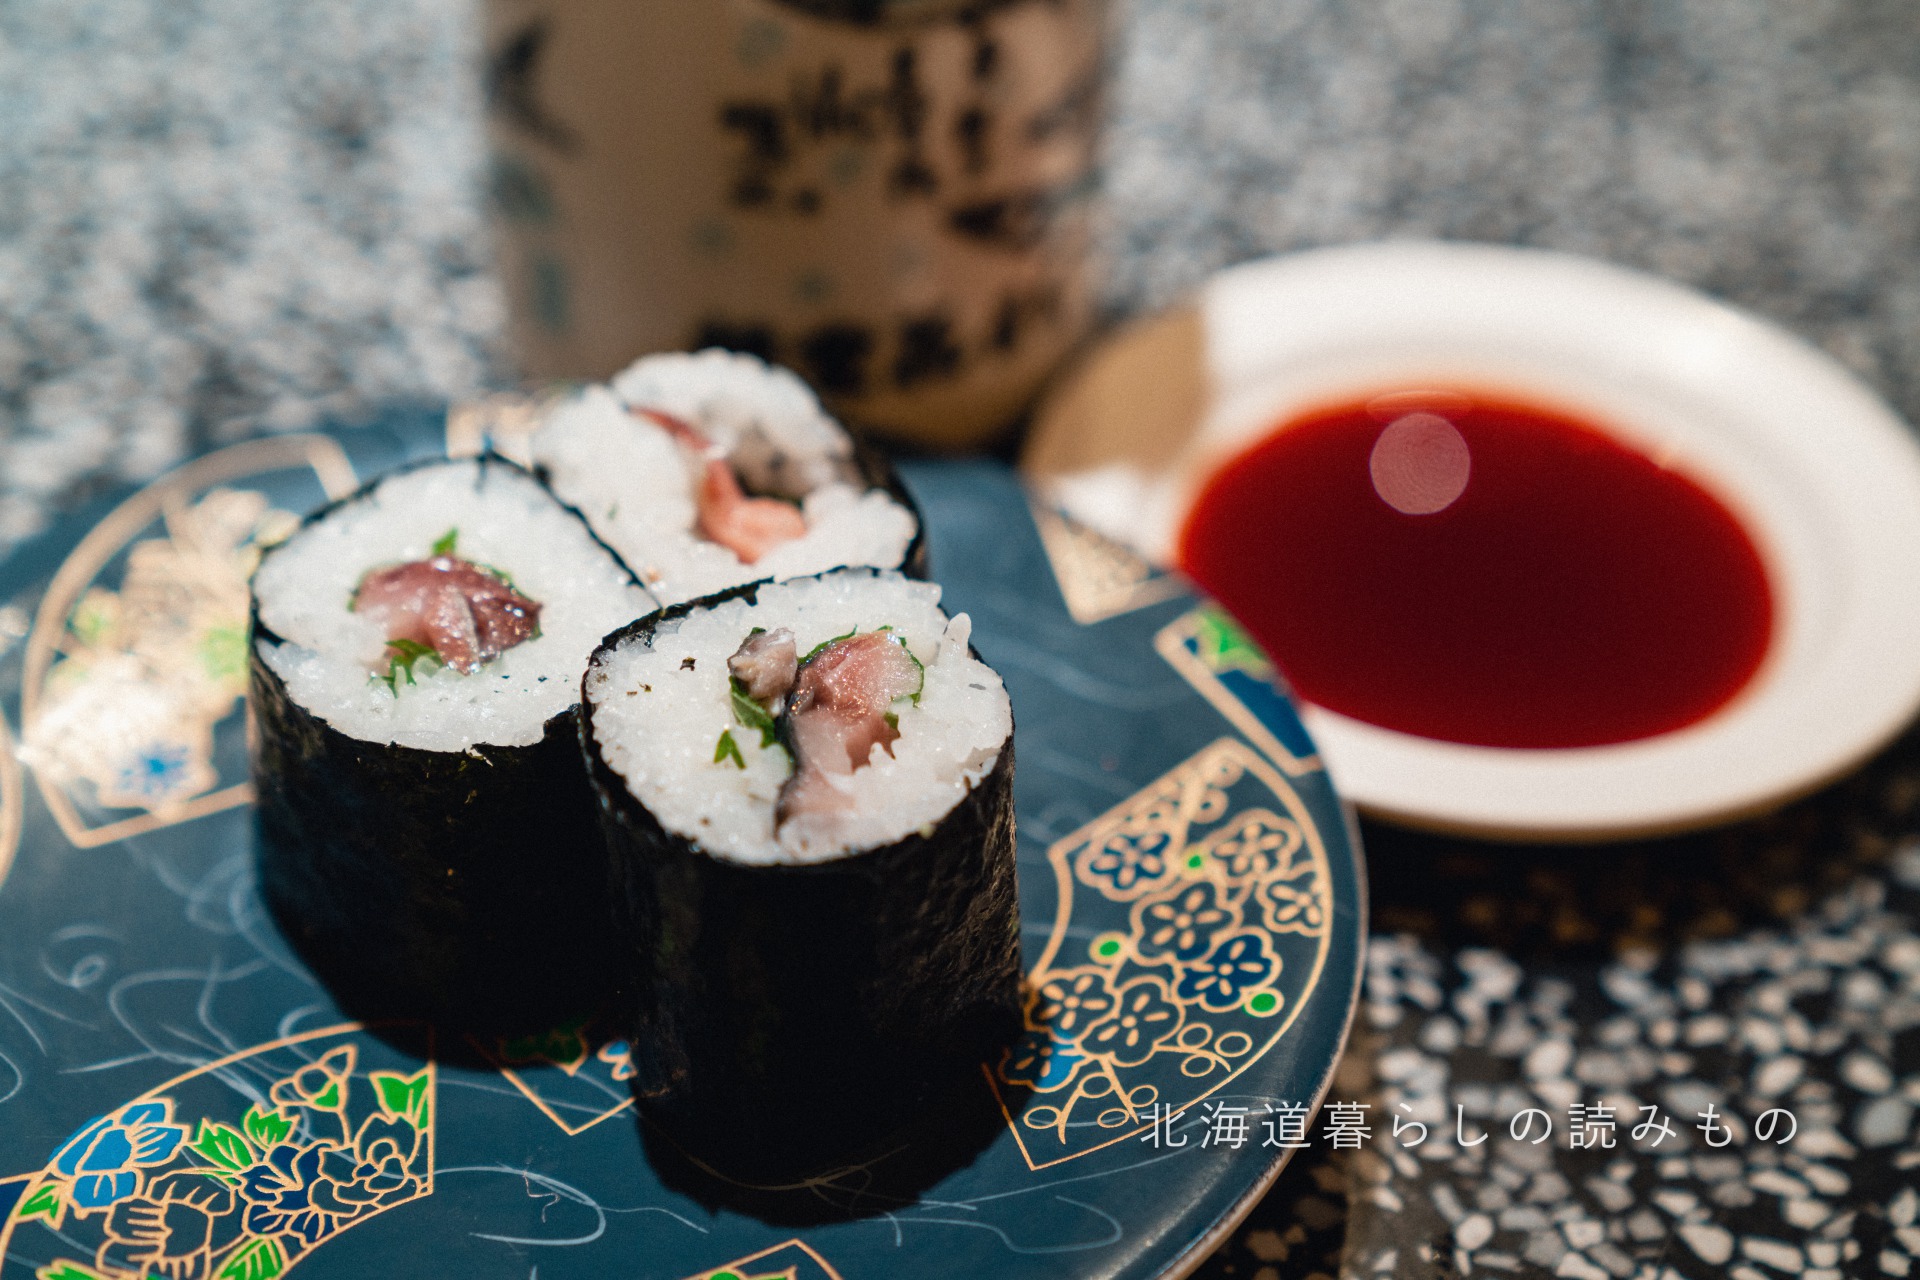 迴轉壽司根室花丸的菜單上的「鯖魚紫蘇巻壽司」